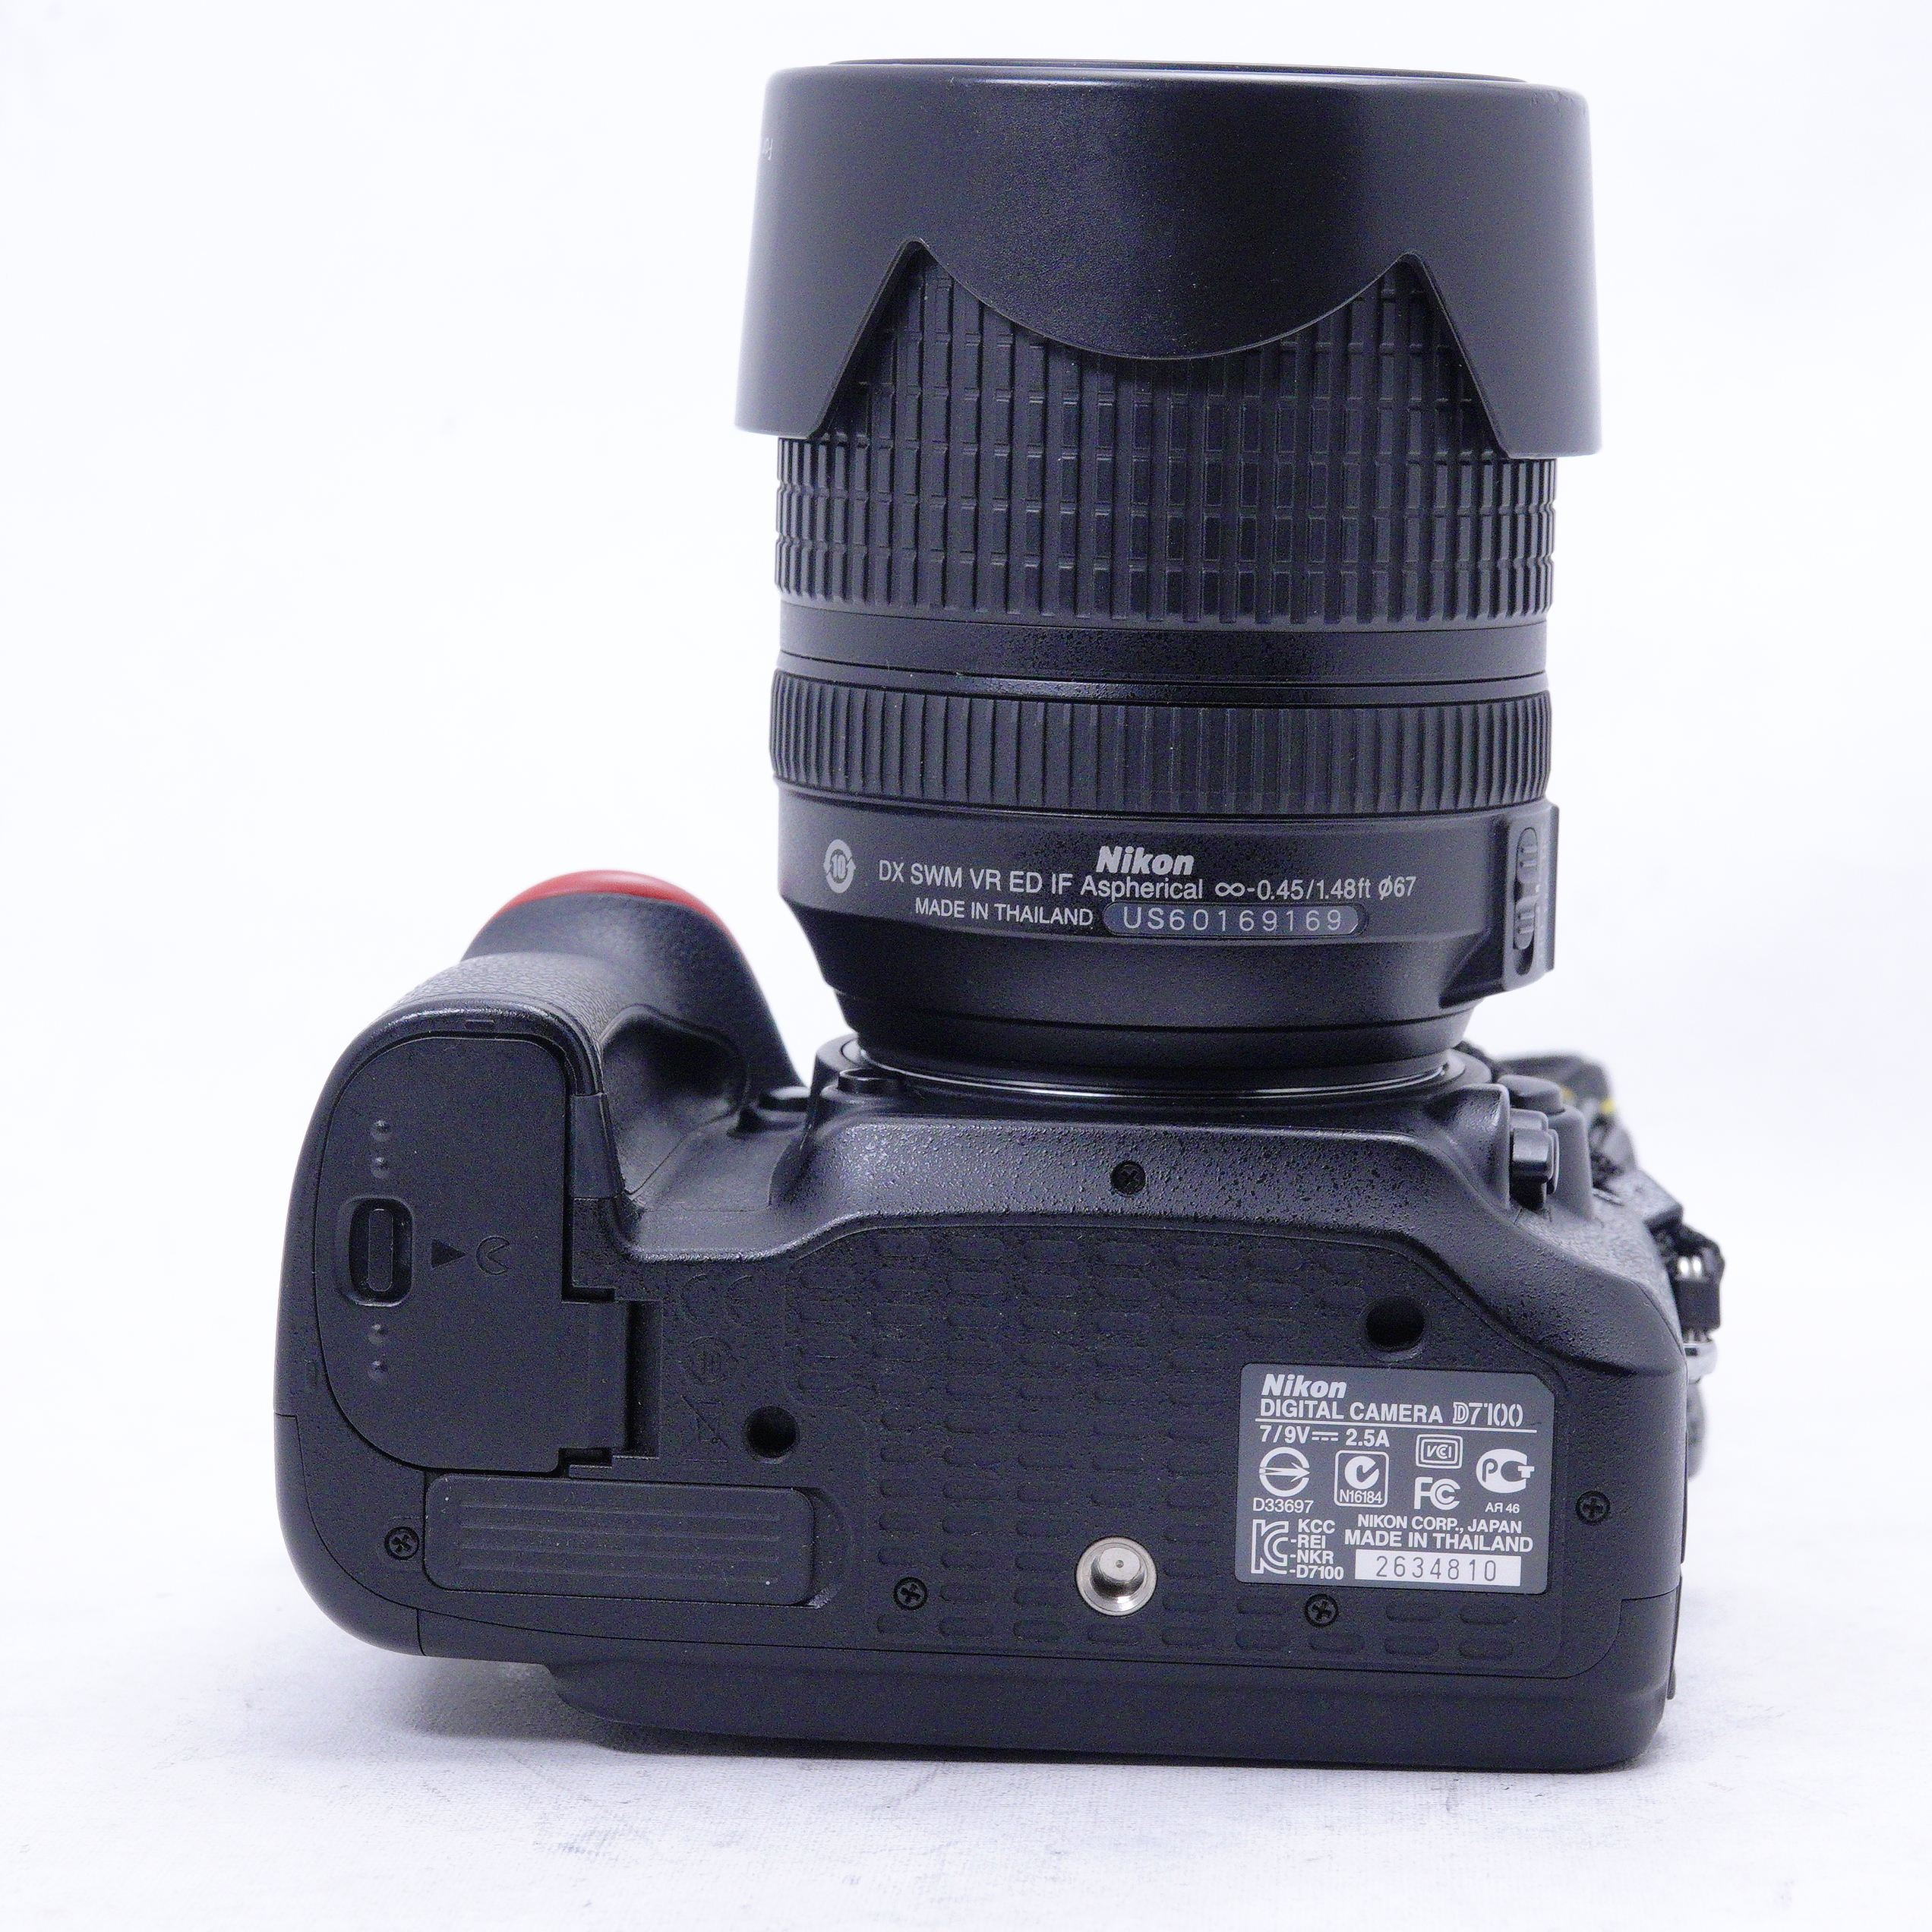 Nikon D7100 con lente de 18-140mm y accesorios - Usado